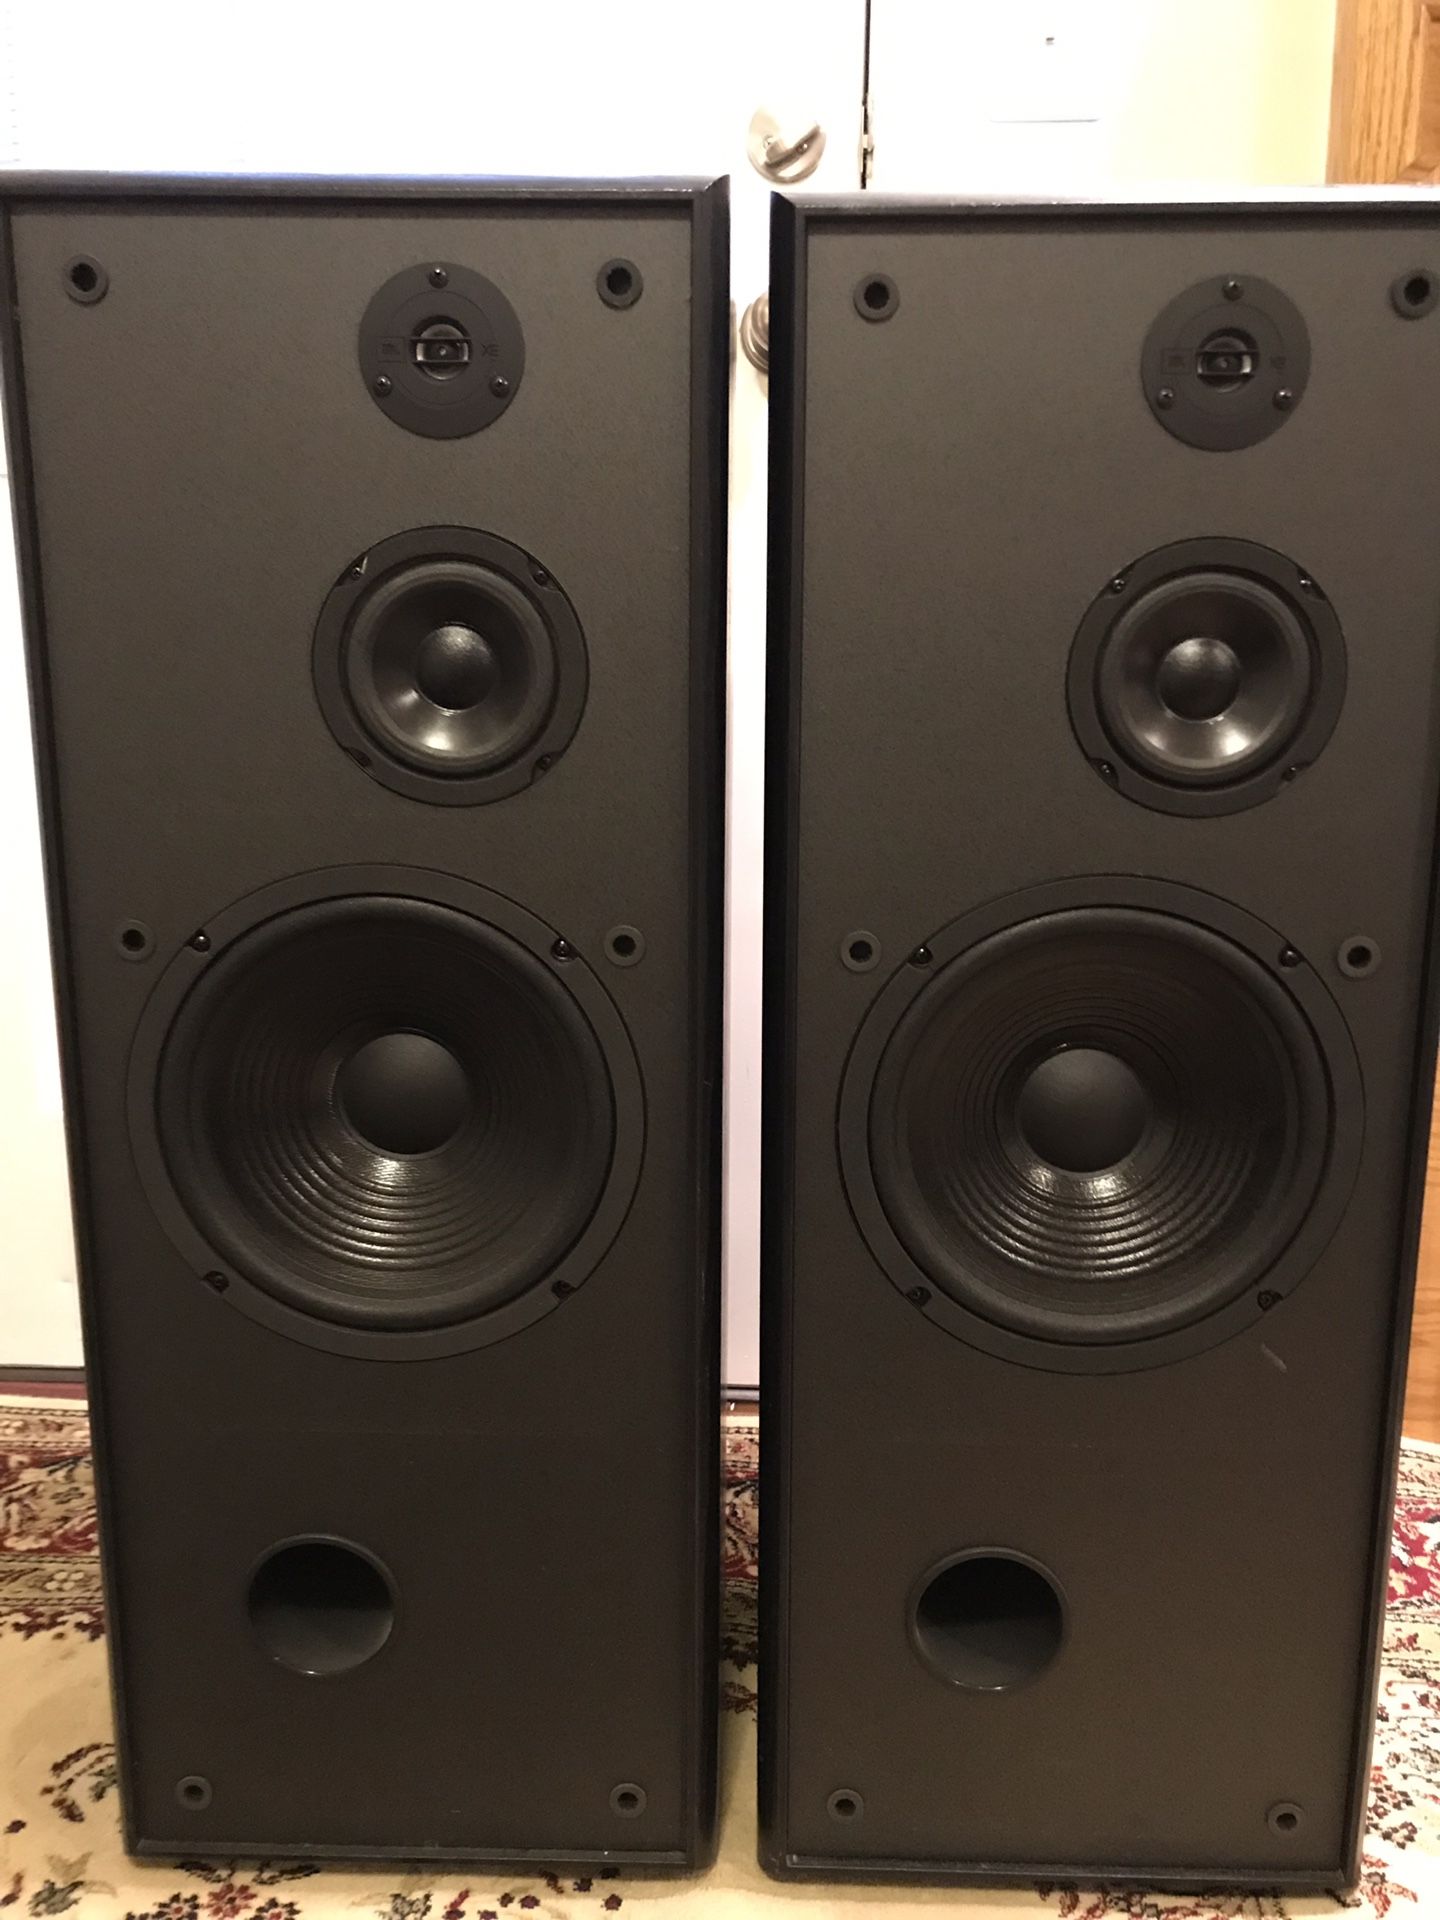 JBL tower speakers